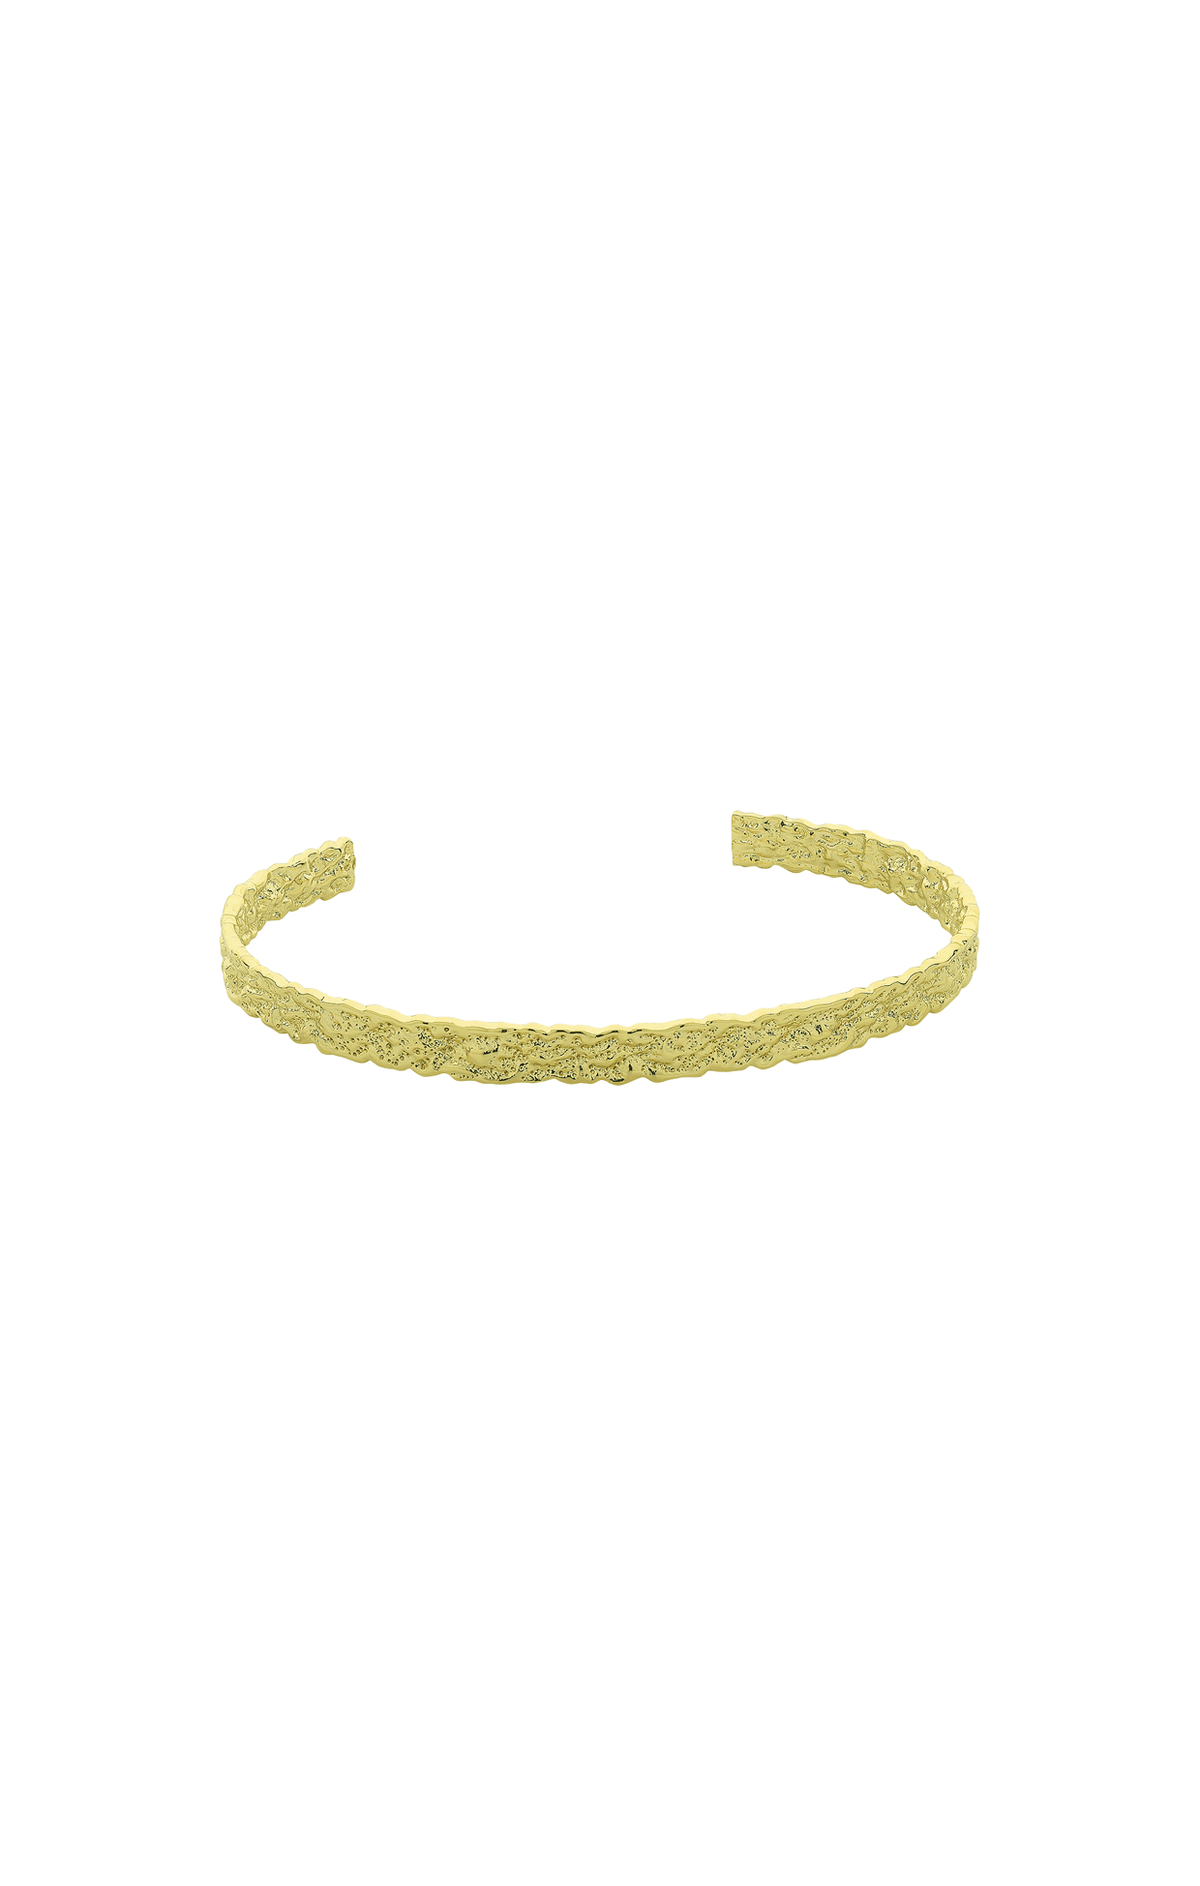 Bracelets OS / GOLD TATUM CUFF IN GOLD